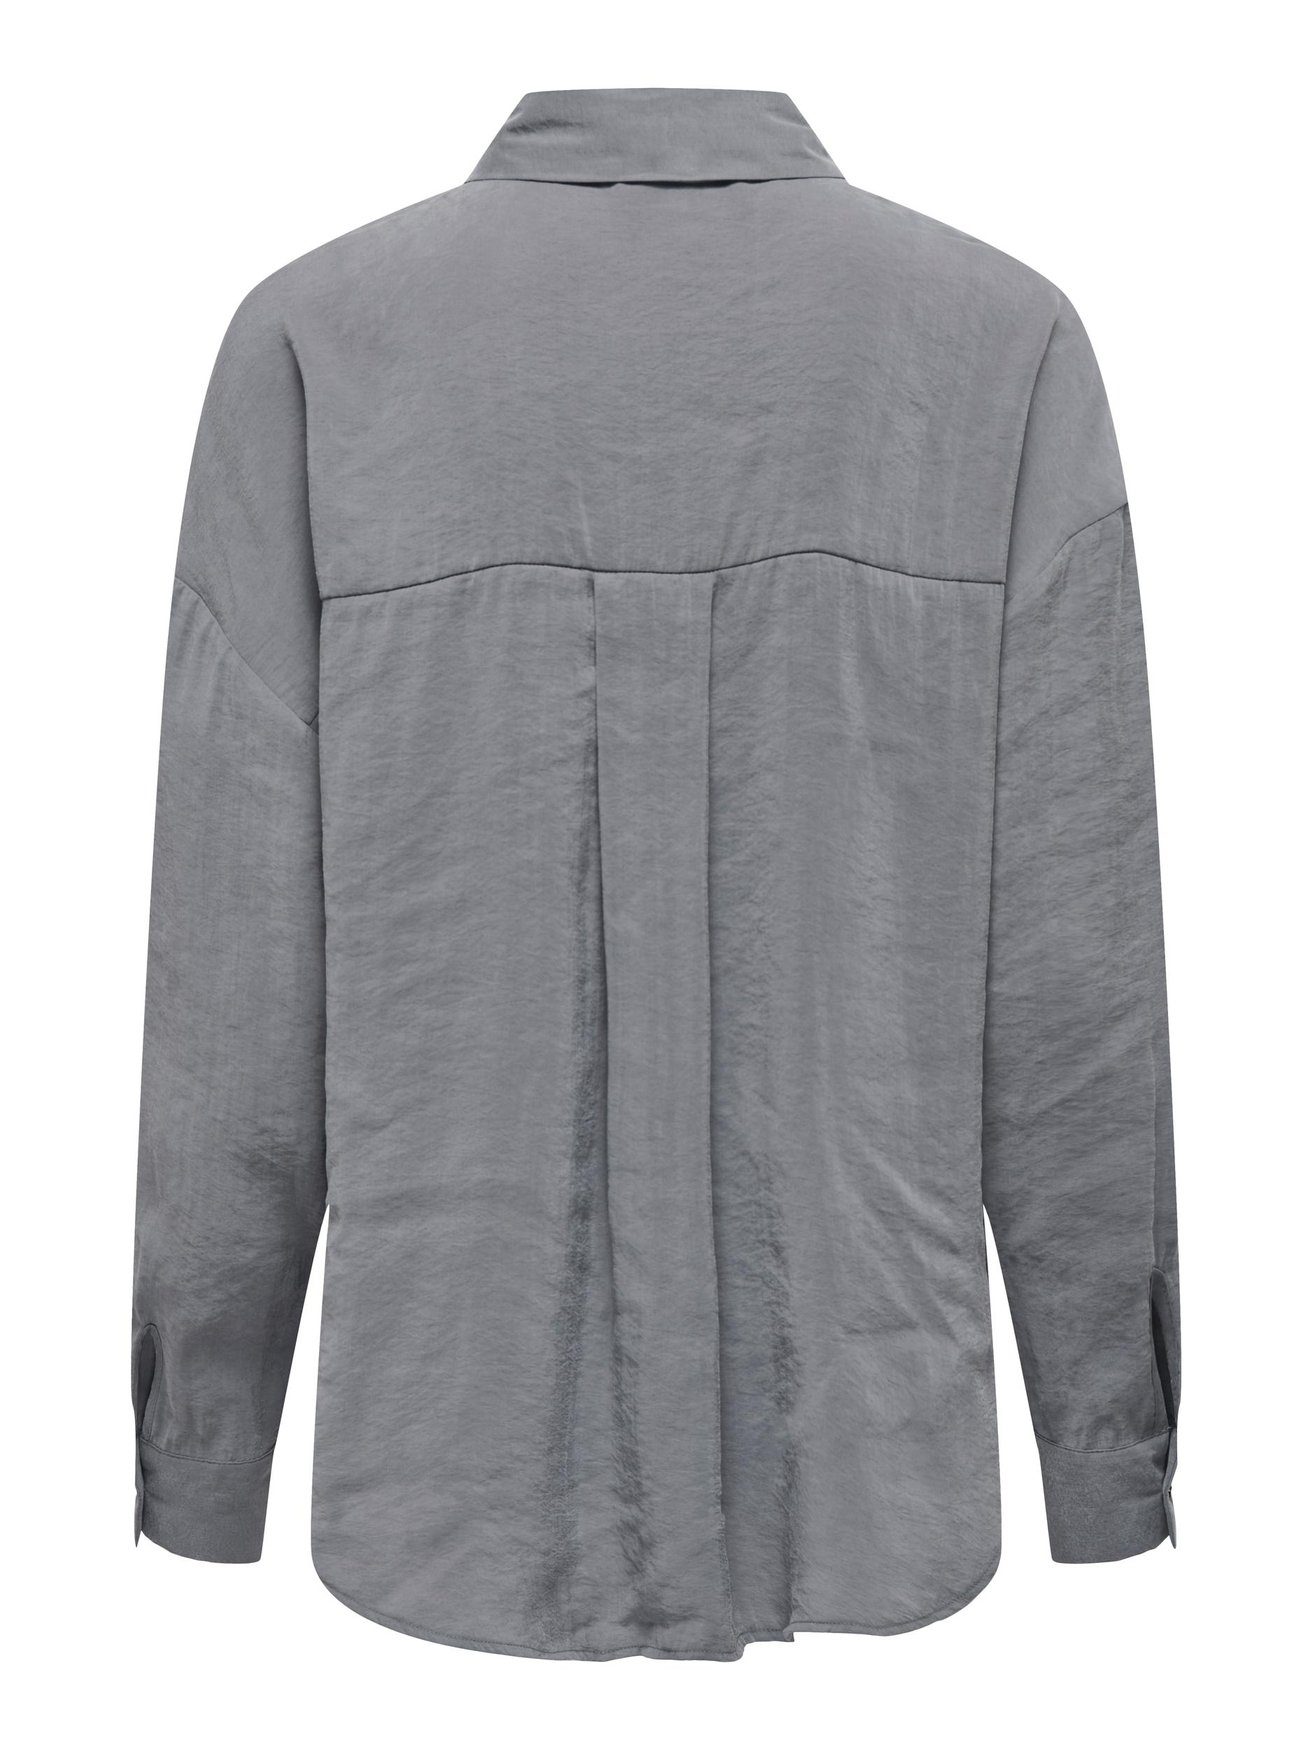 ONLIRIS Hemd Langarm in Oversize 5635 ONLY Weites Bluse Shirt Blusenshirt Grau